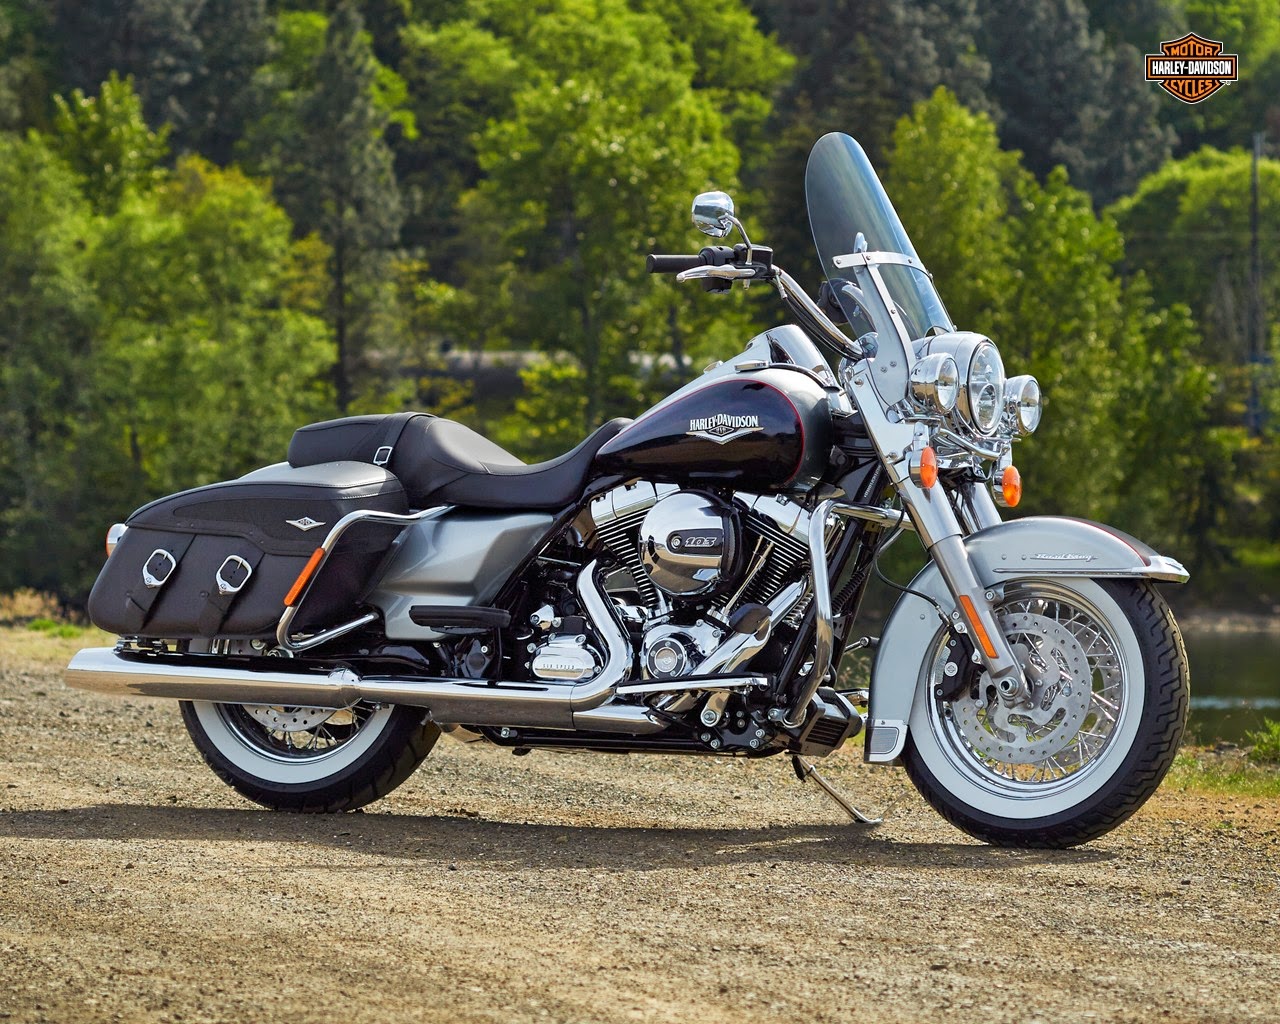 Koleksi Wallpaper HD Motor Touring Harley Davidson Terbaru 2015